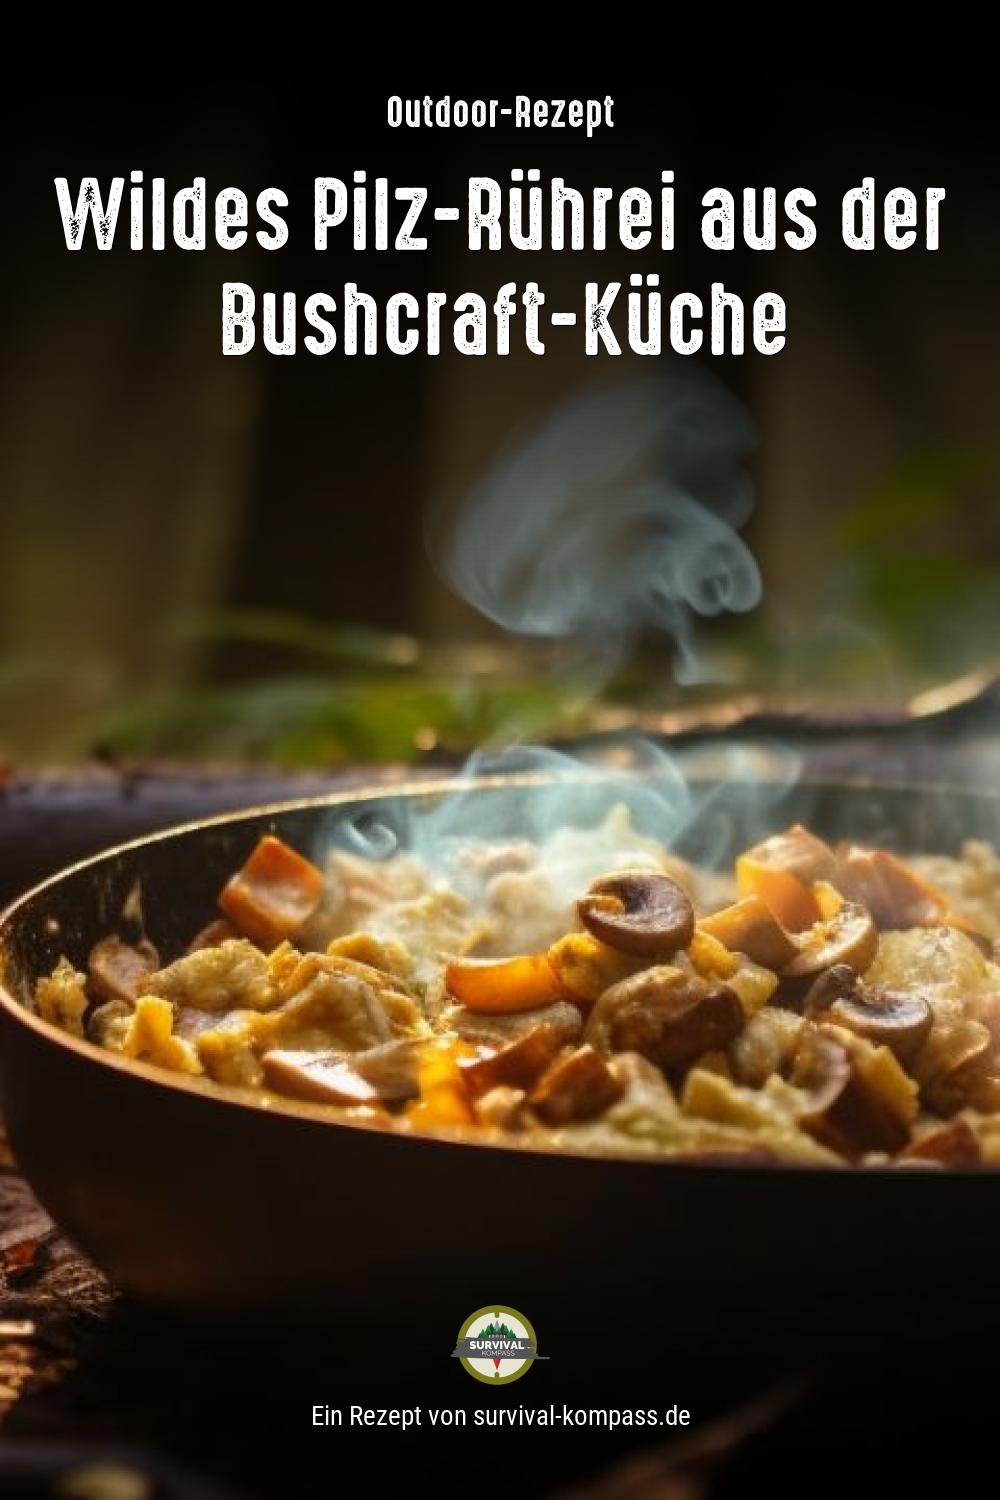 Wildes Pilz-Rührei aus der Bushcraft-Küche